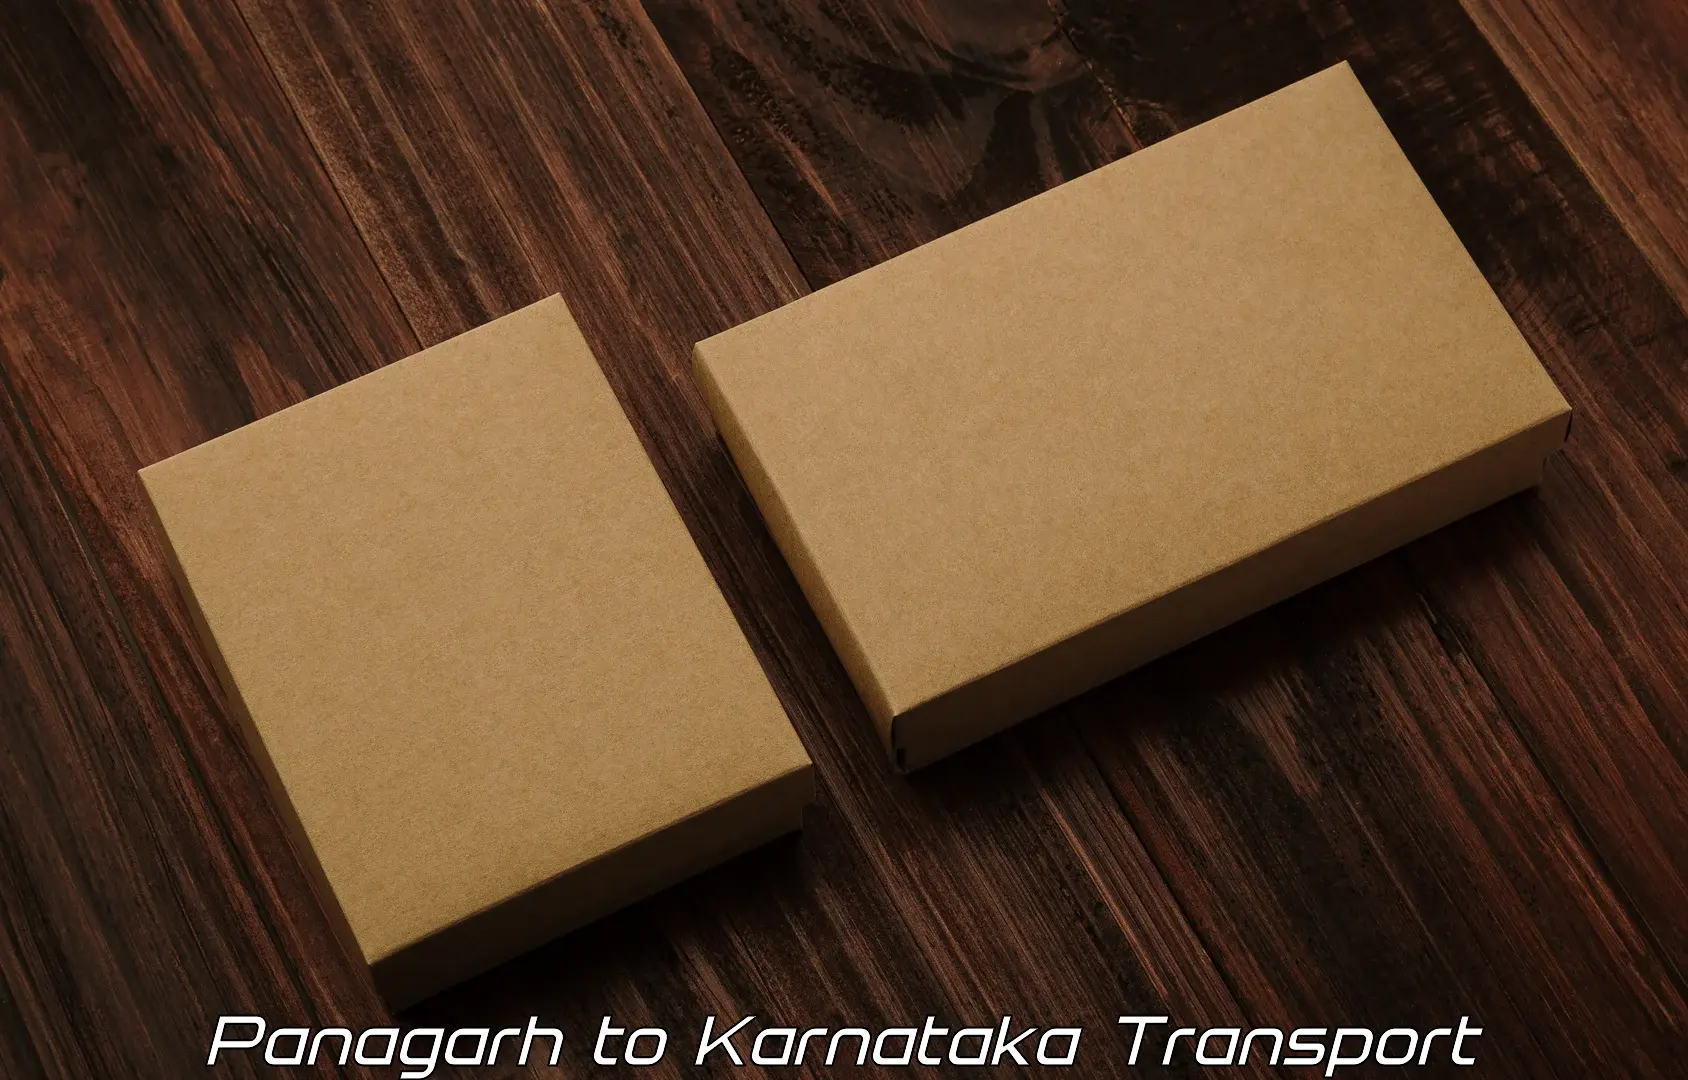 Two wheeler parcel service Panagarh to Madikeri